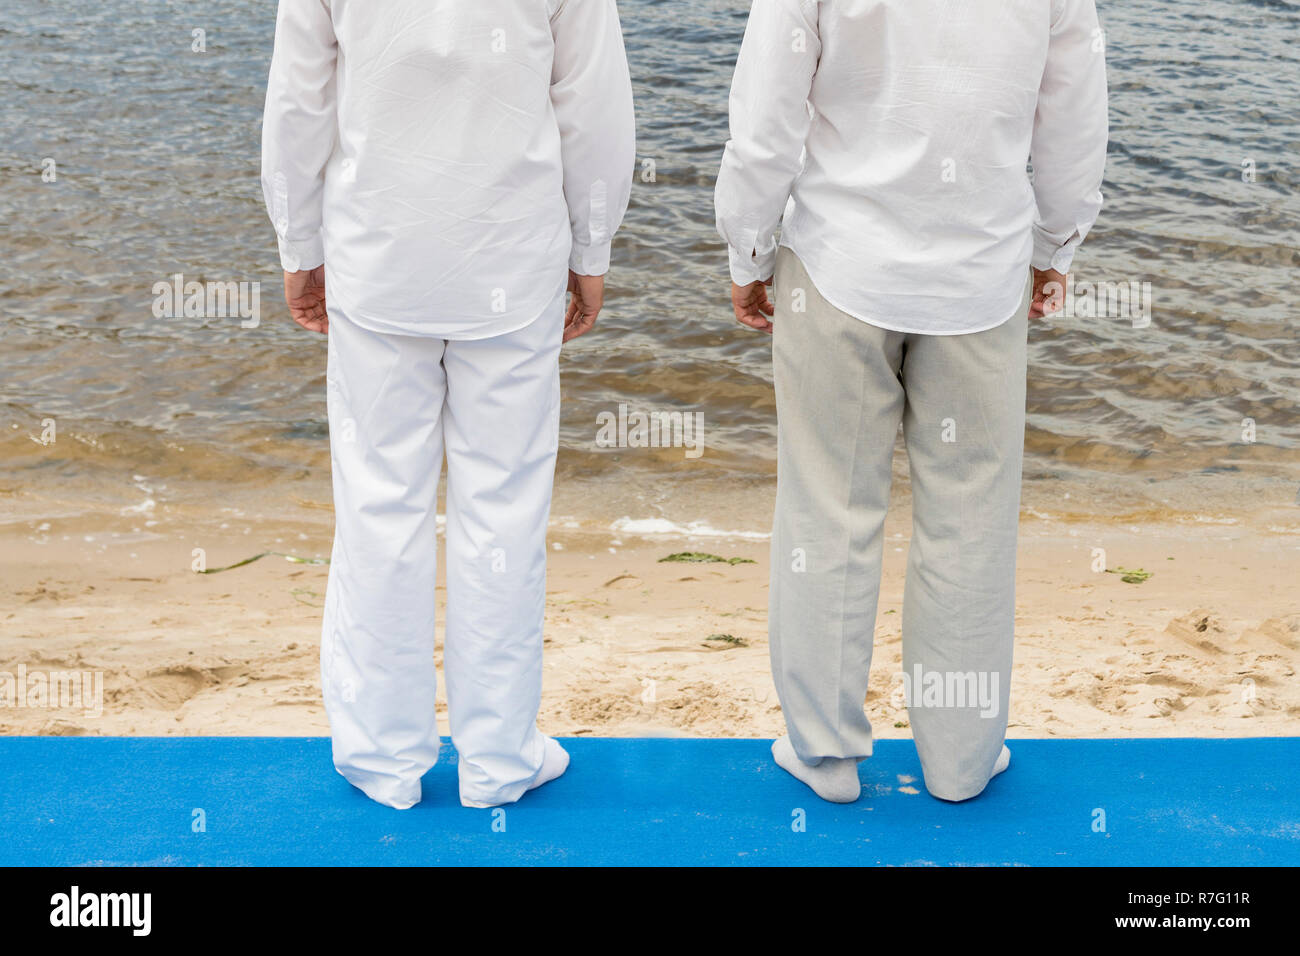 Dos hombres están planeando el bautismo en agua. Dos hombres en ropa blanca en frente un río Fotografía de stock -